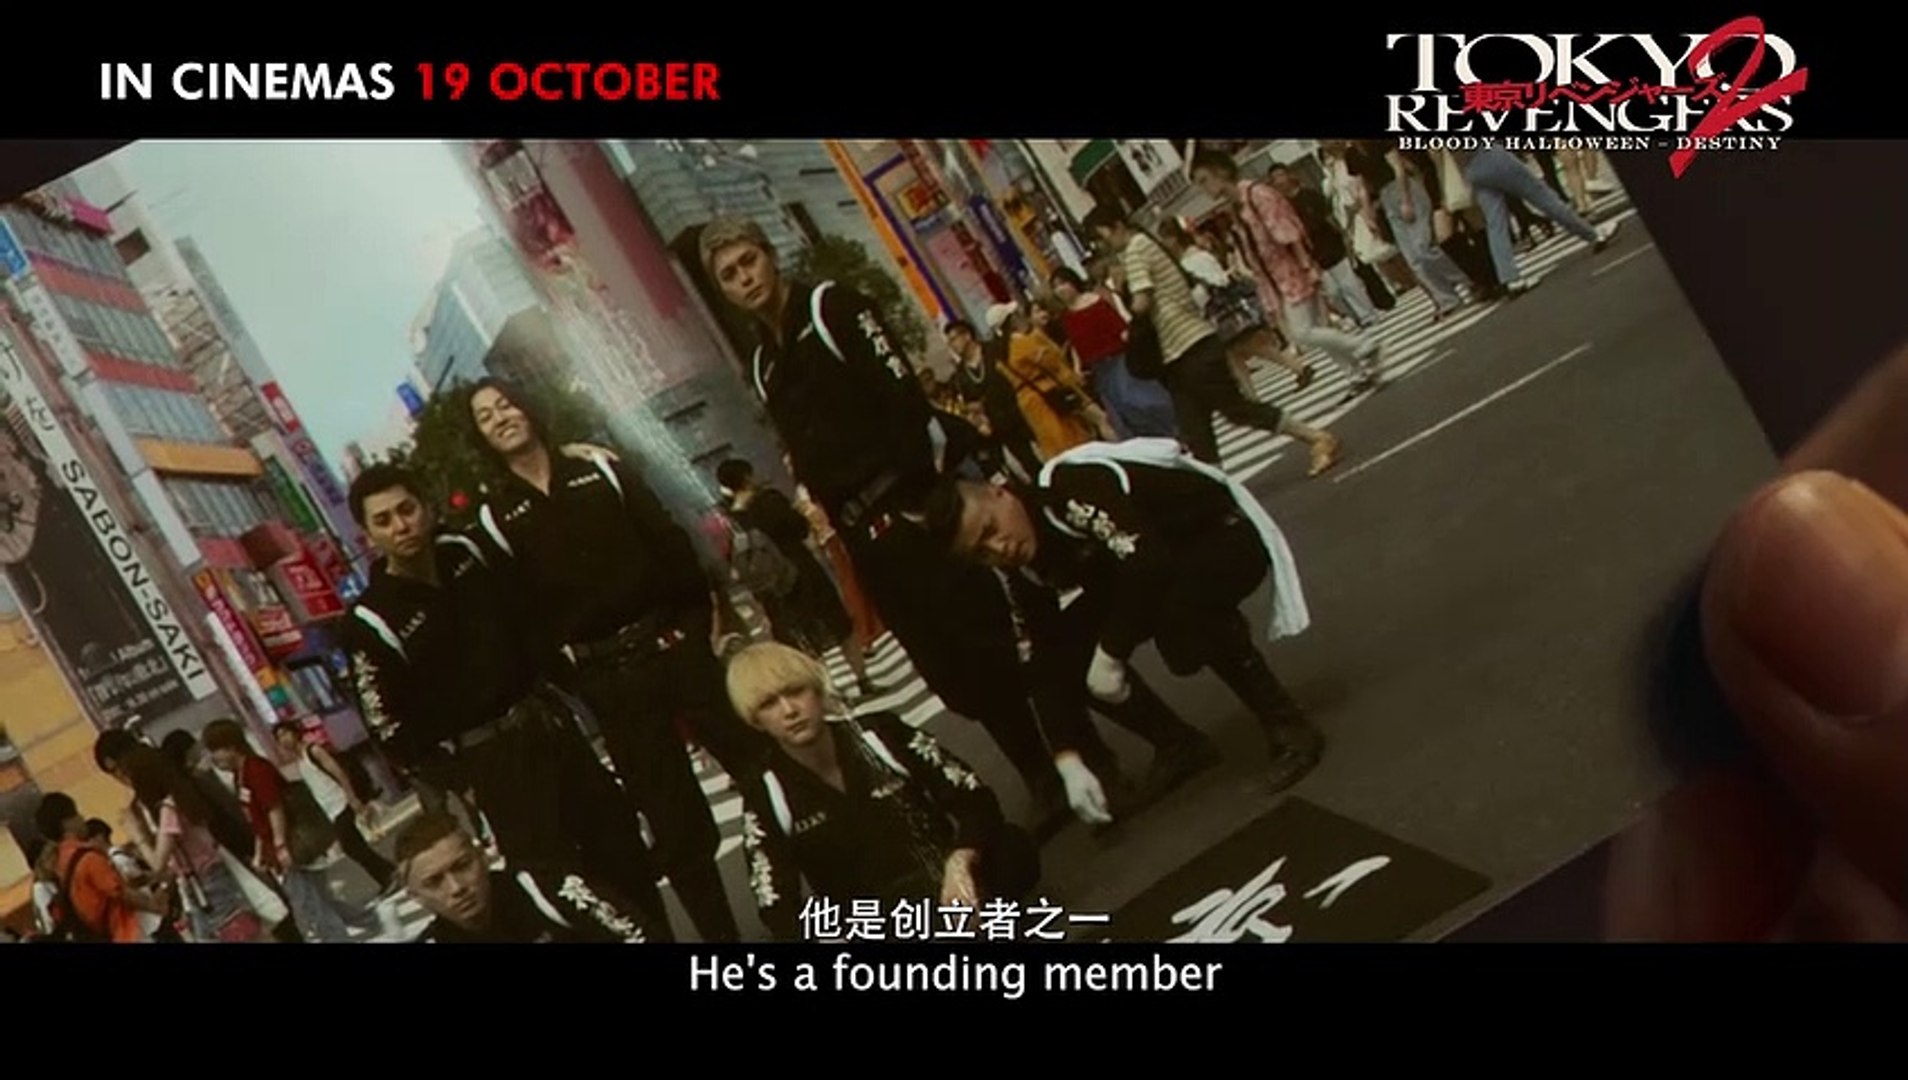 Tokyo Revengers 2 - movie: watch stream online